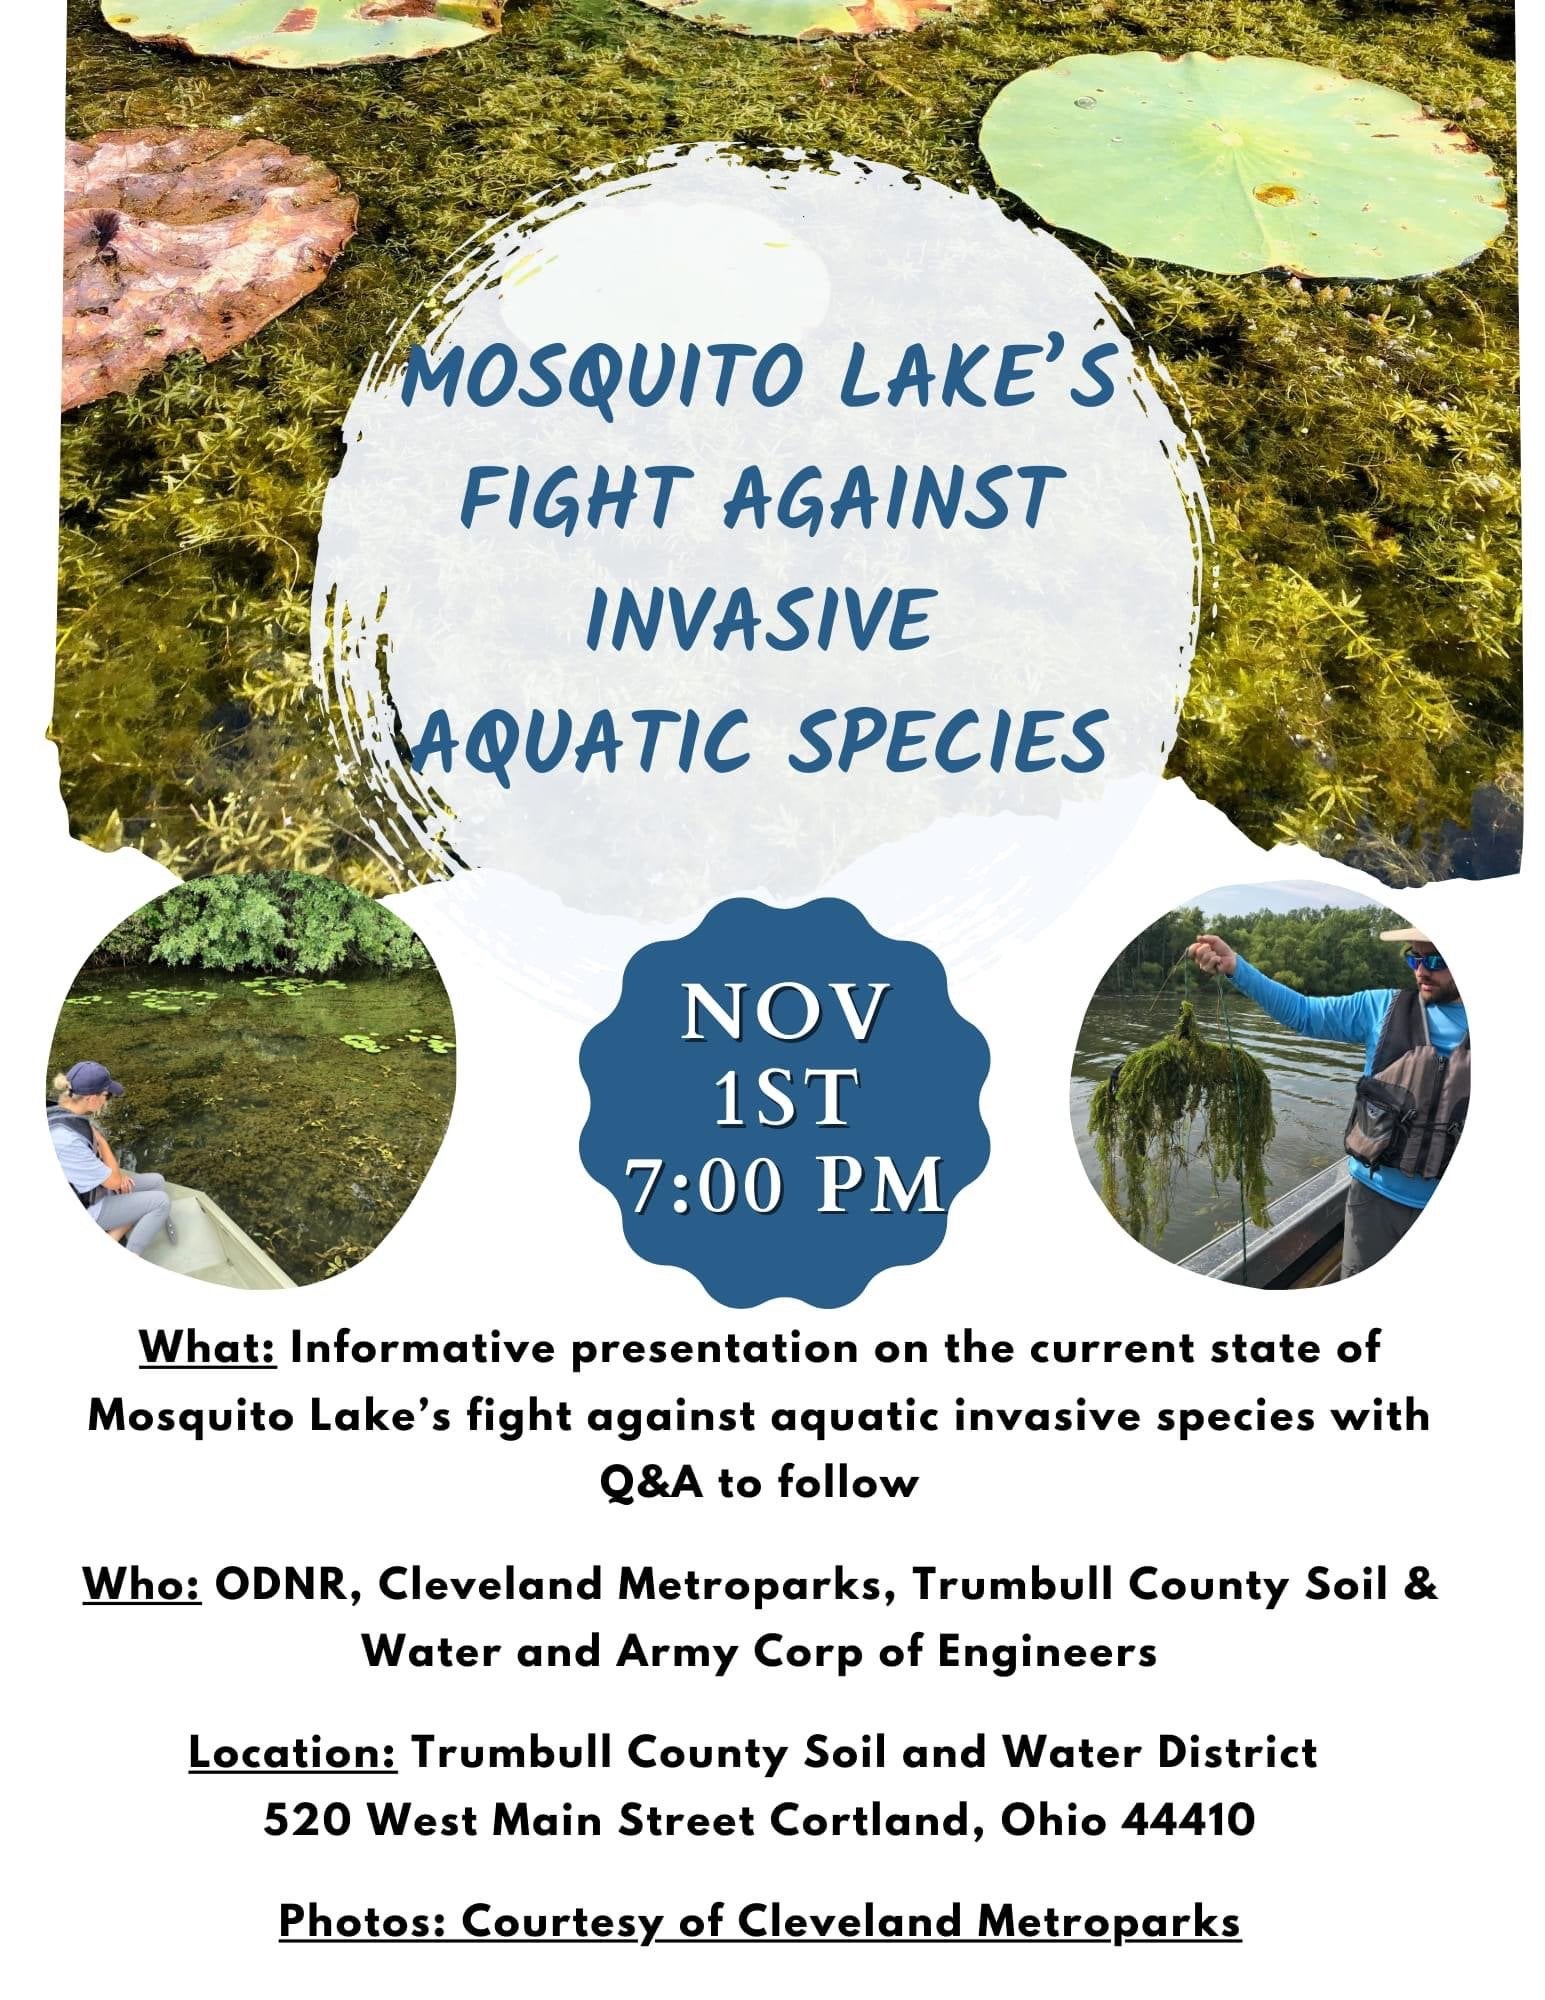 Mosquito Lake Fight against Invasive Aquatic Species